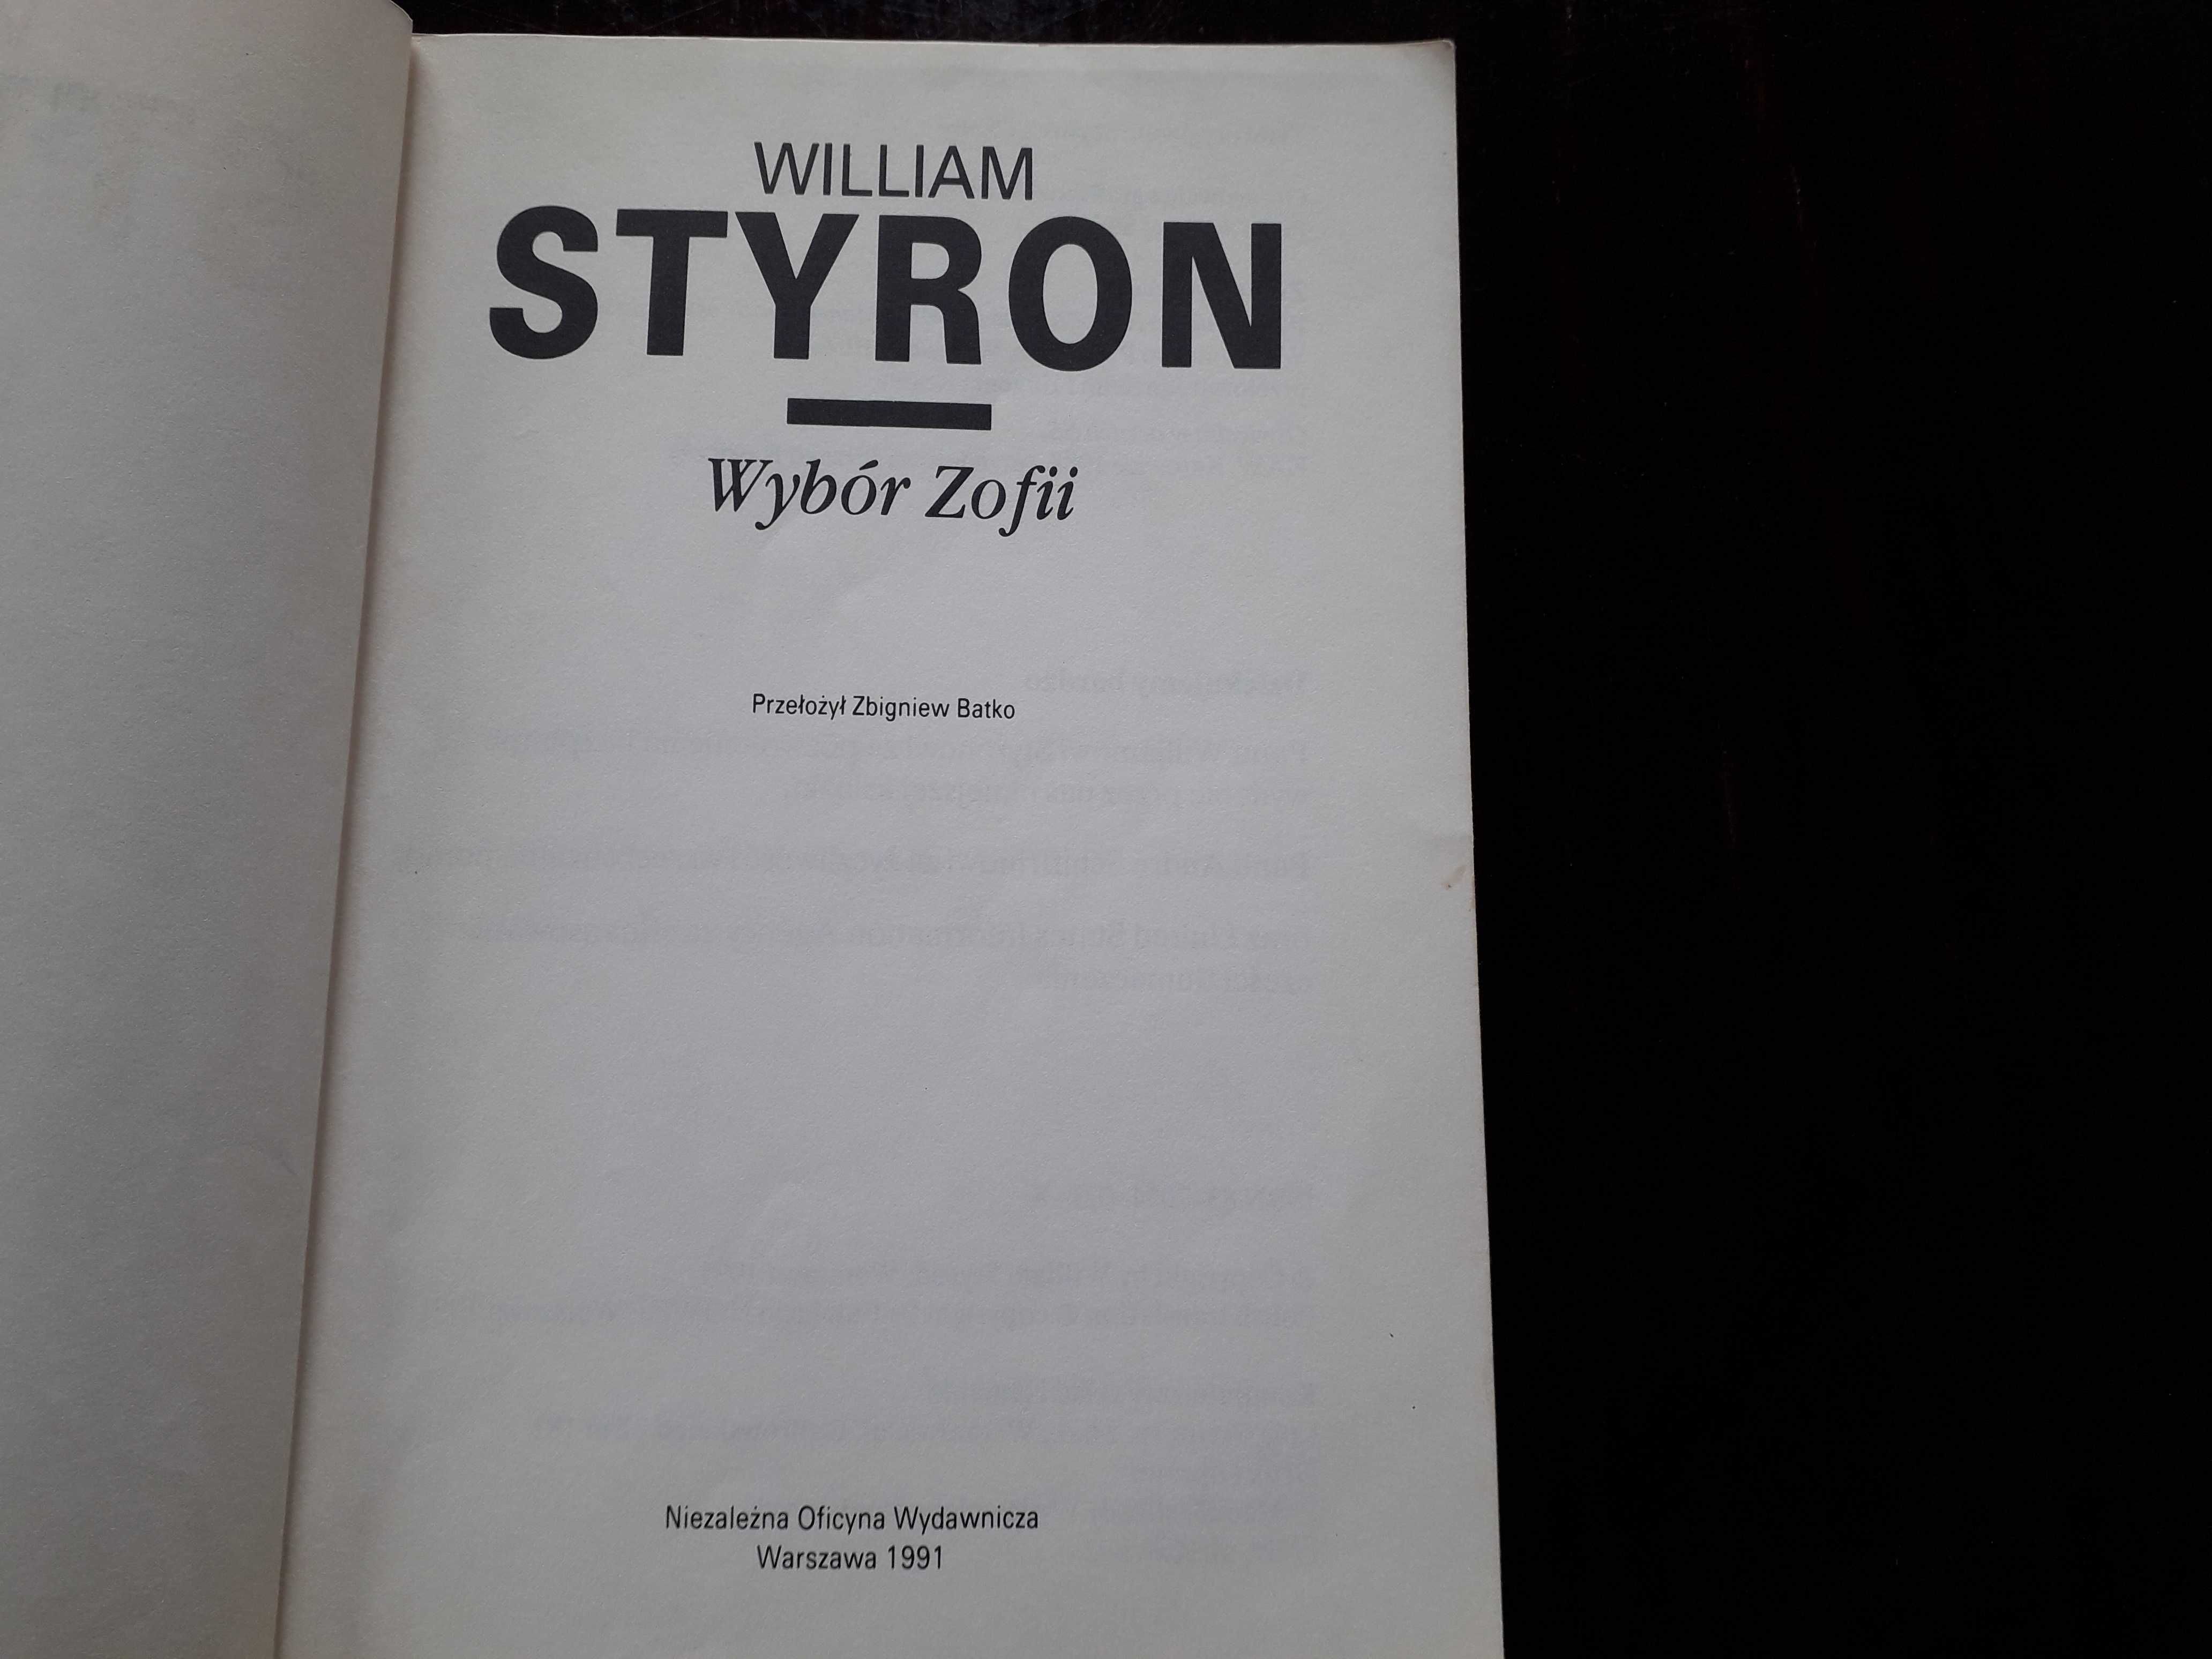 William Styron - "Wybór Zofii"